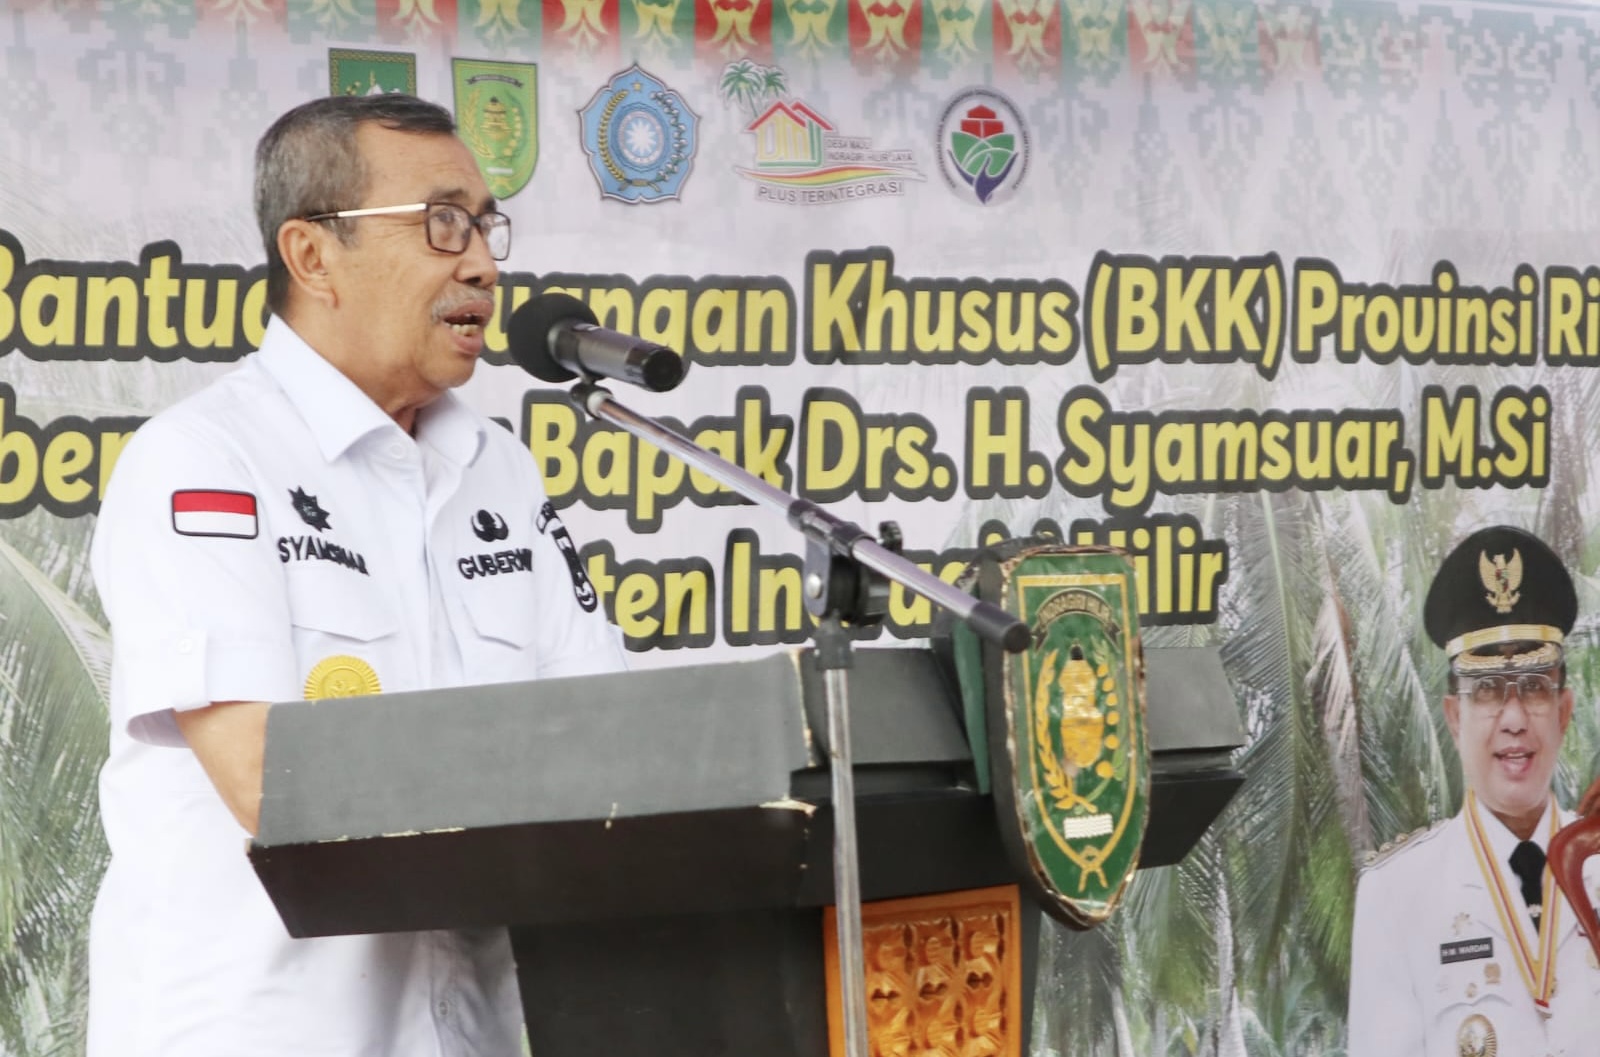 Ribuan Desa di Riau Terima BKK Sebesar Rp1,12 Trilun Sejak 2019, Apa Hasilnya?